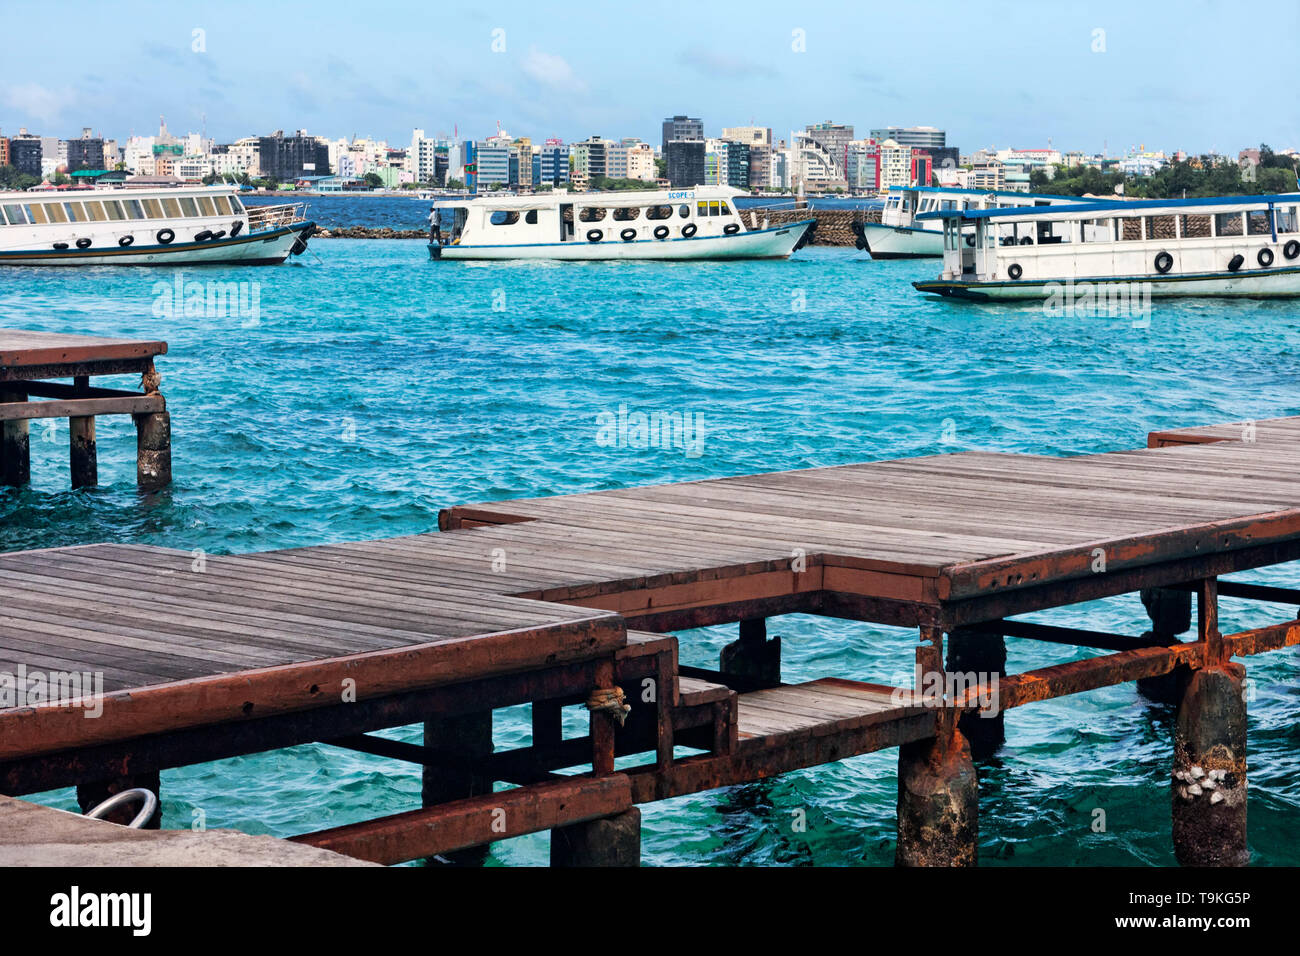 Maschio, Repubblica delle Maldive - Luglio 24, 2016 :Scorcio del porto di Malè, con molo in legno e numerosi battelli utilizzati per il trasporto e gite turistiche in t Foto Stock